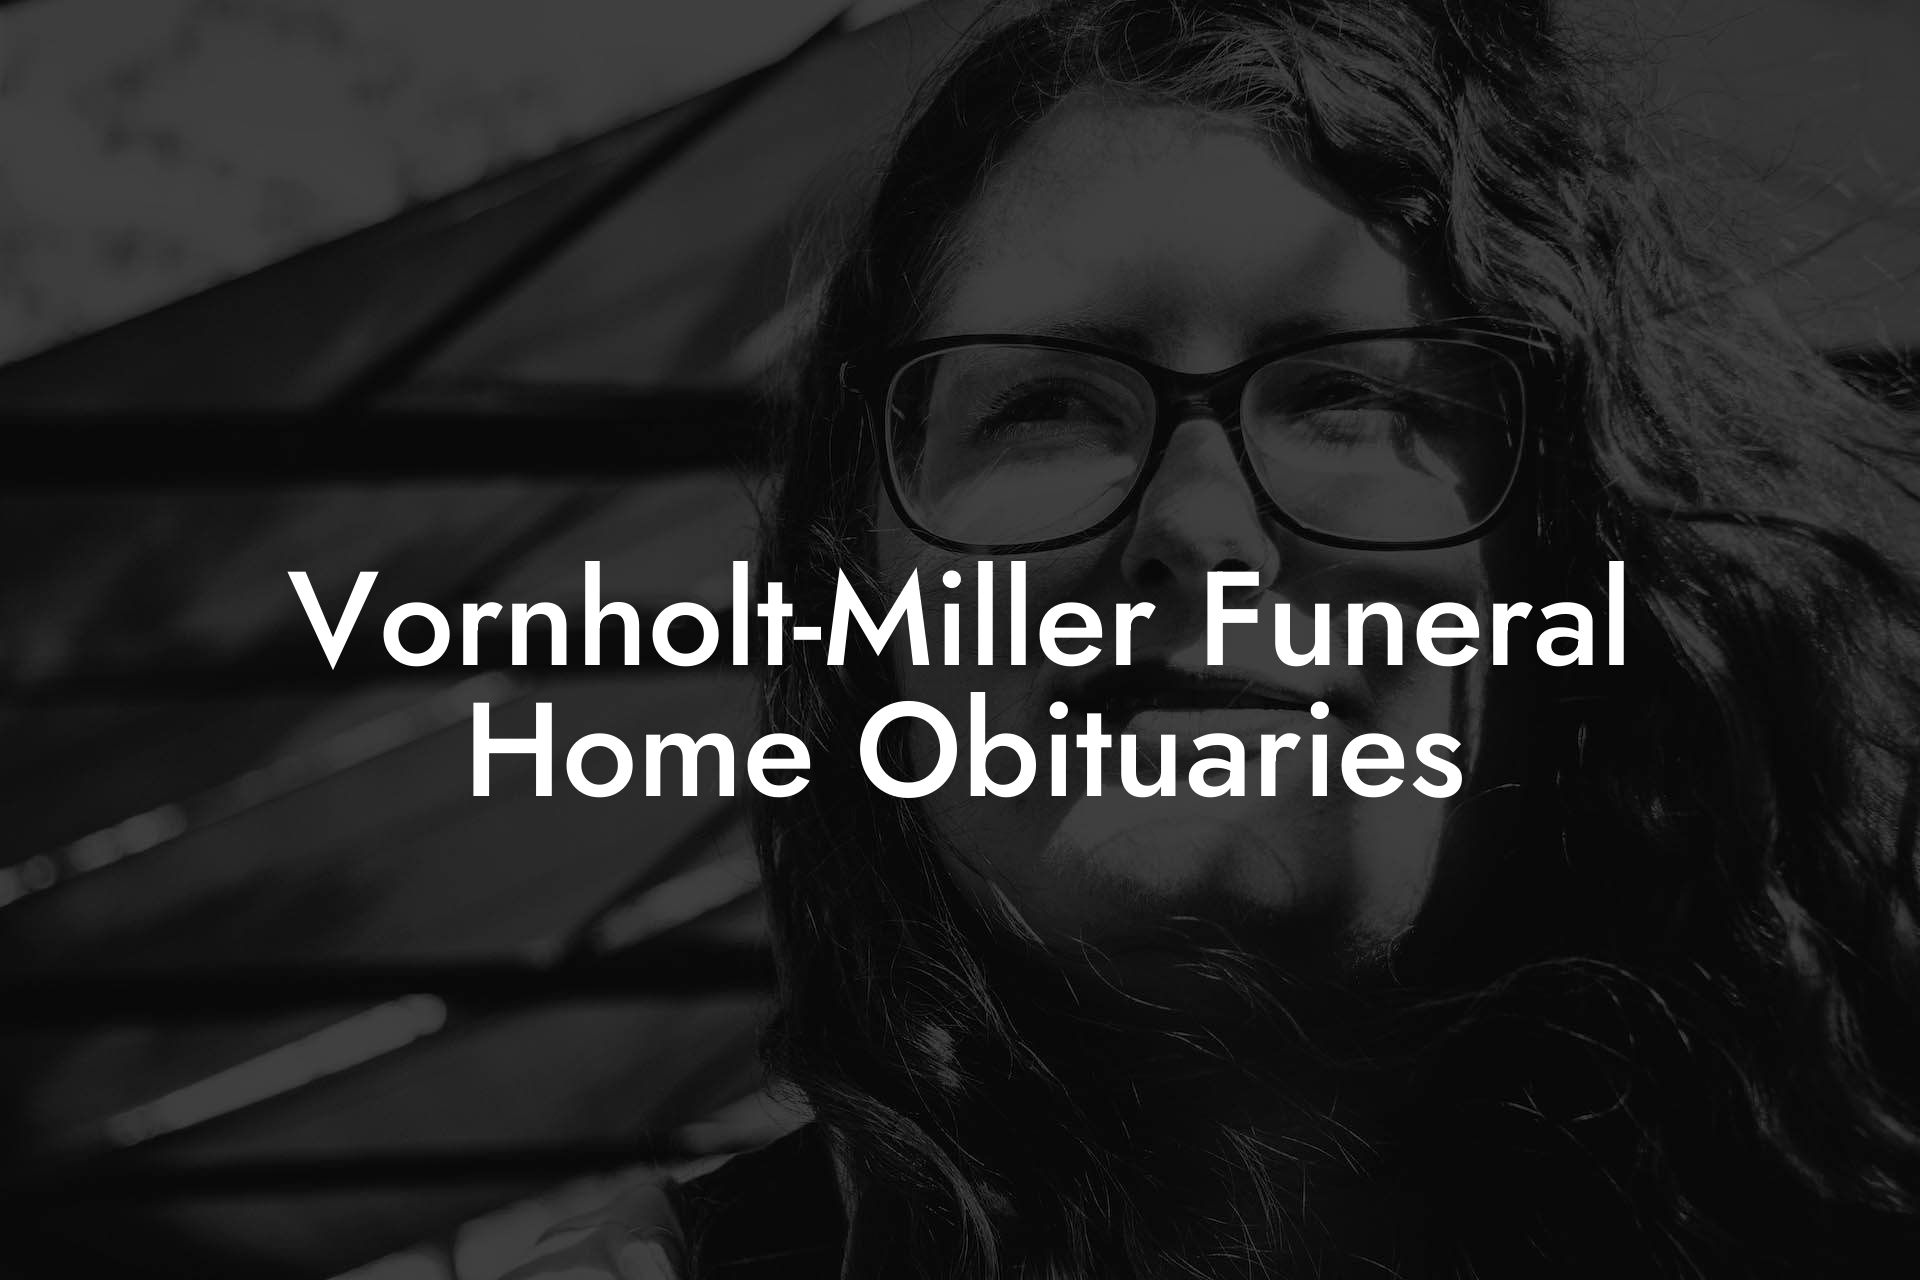 Vornholt-Miller Funeral Home Obituaries